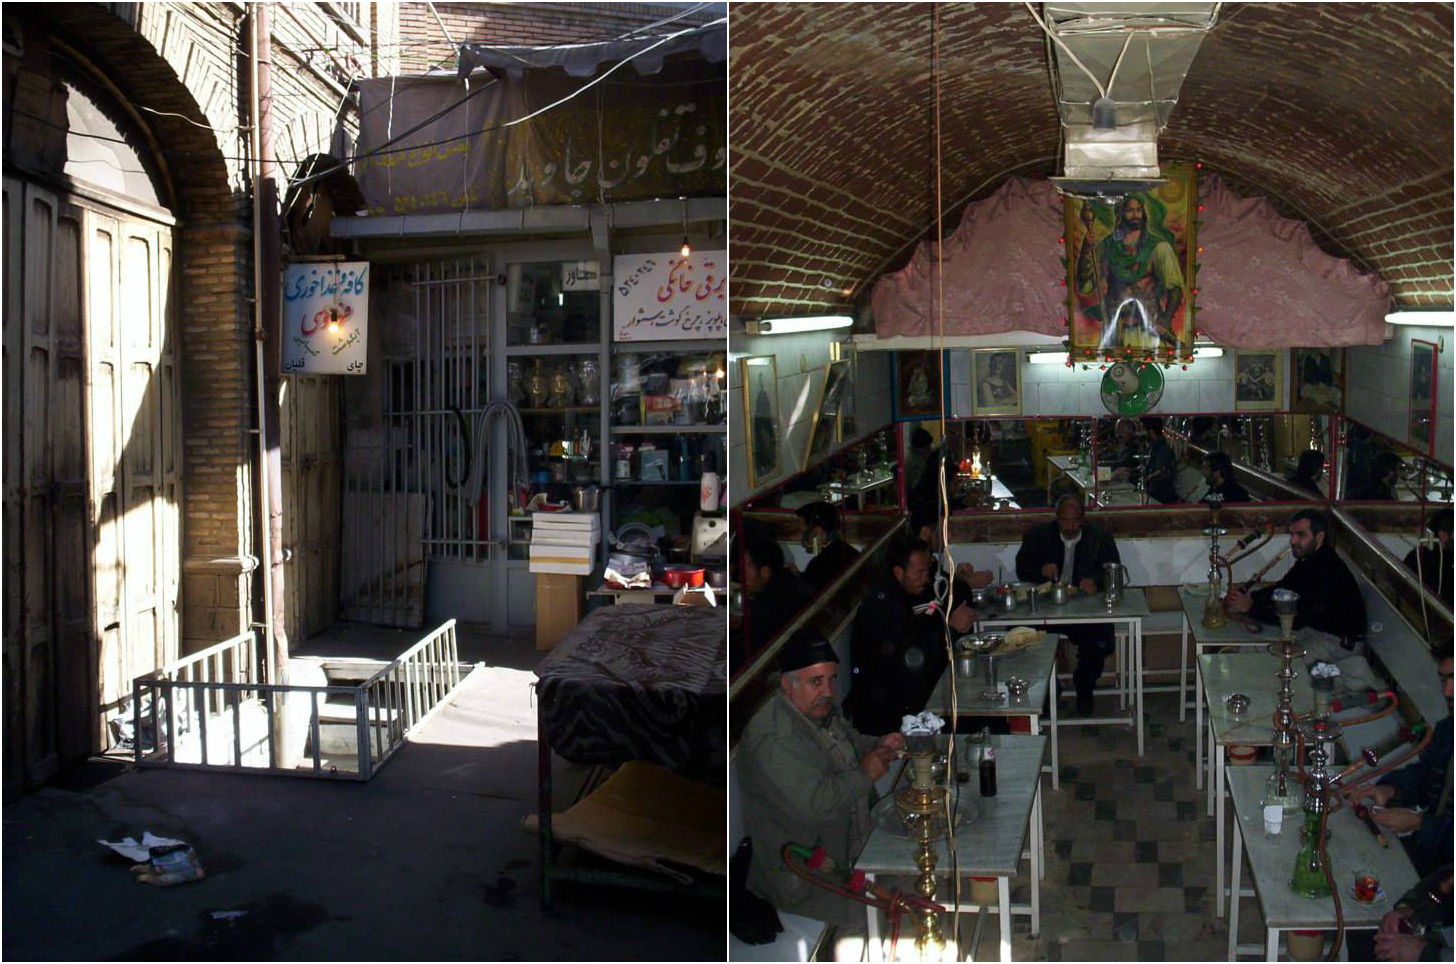 Tabriz chaikhanna (tea house) - that was the entrance down those steps in the bazaar floor!